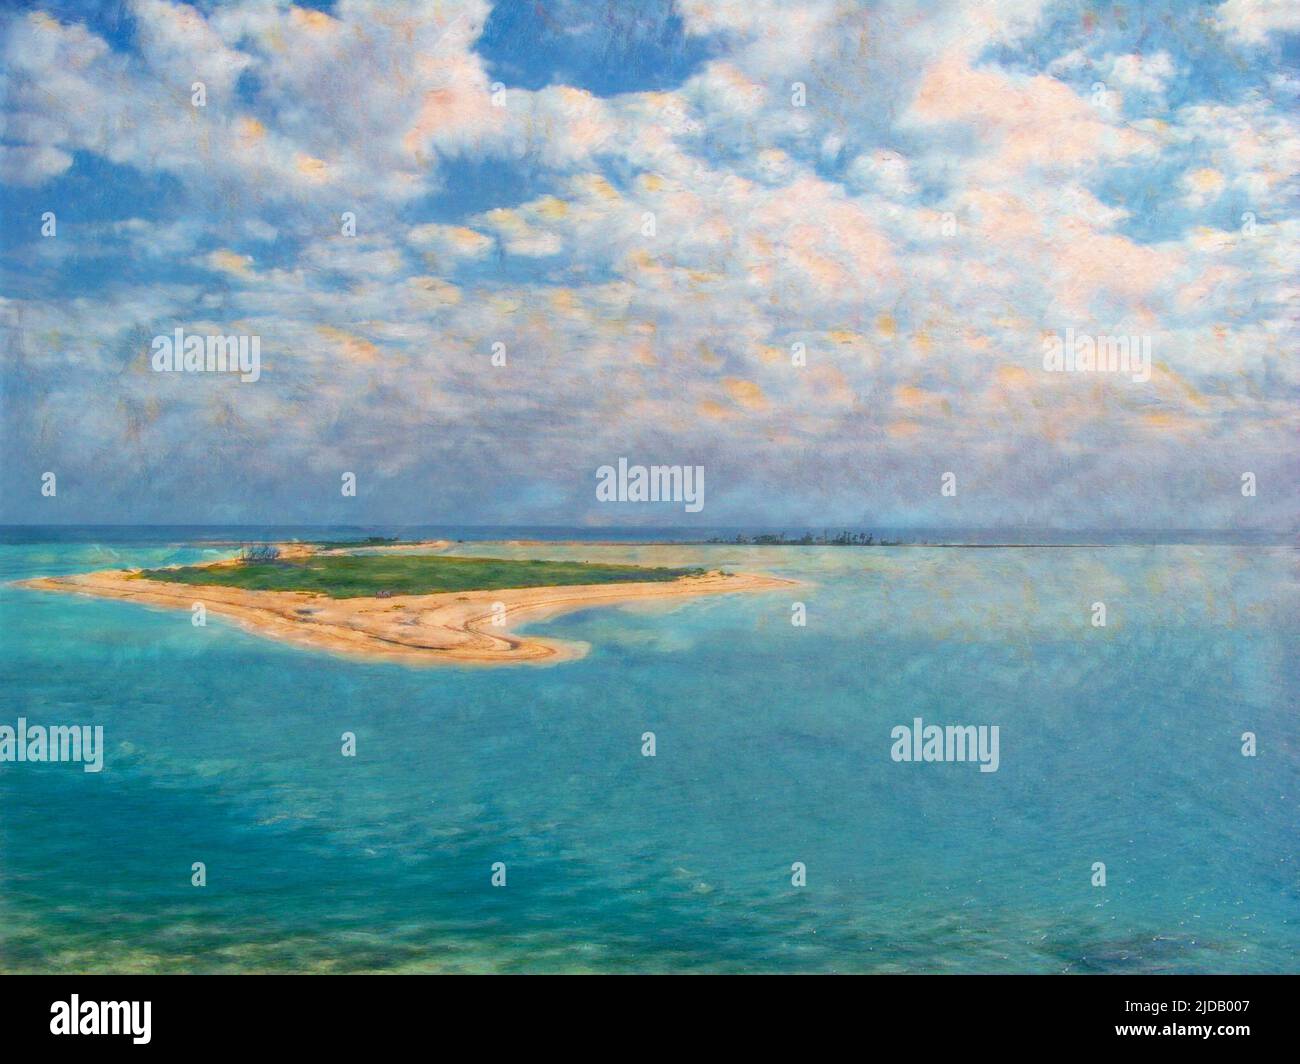 Une petite île dans le parc national de Dry Tortugas; édité pour ressembler à une peinture impressionniste. Banque D'Images